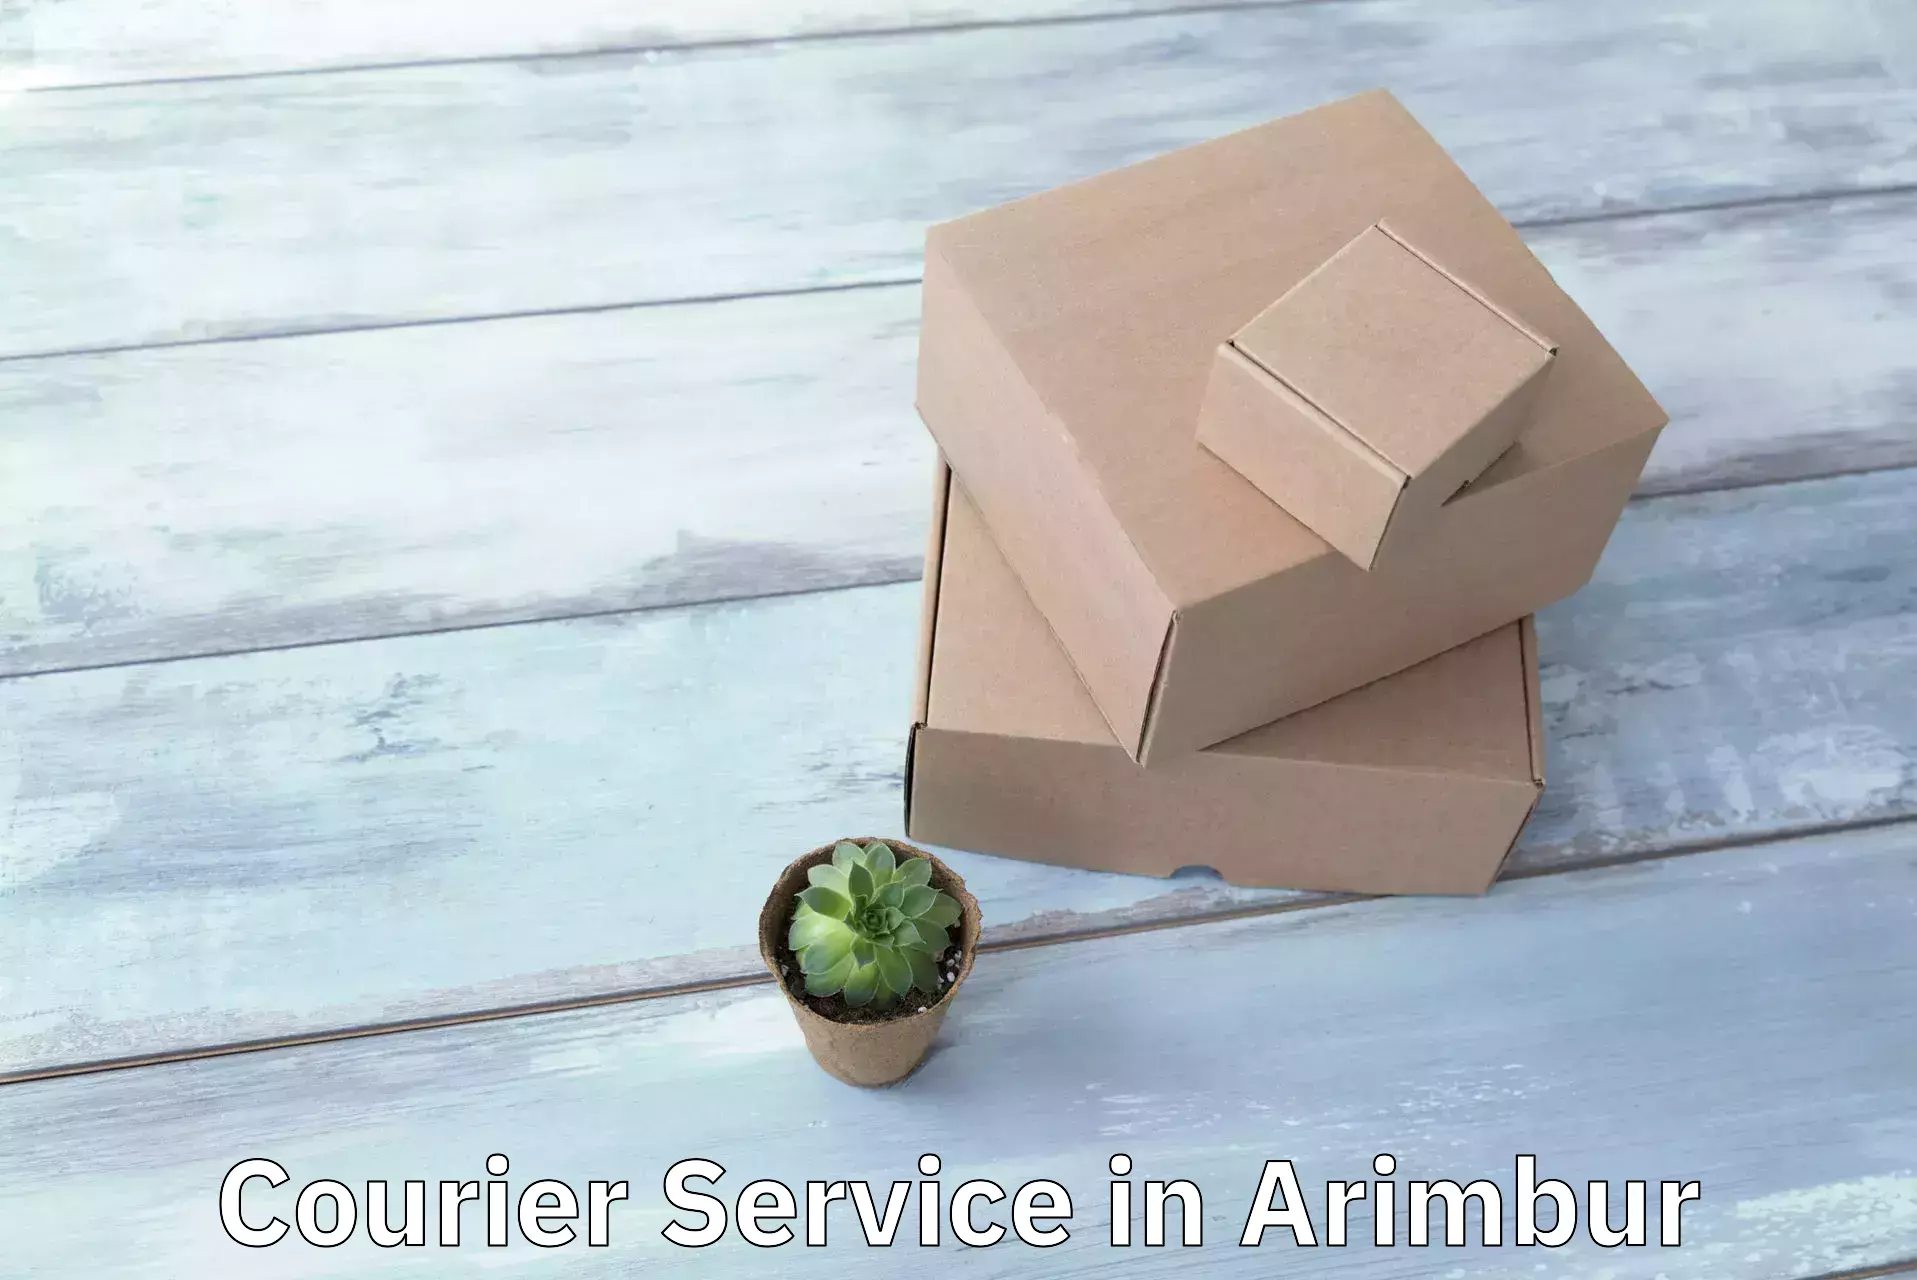 Sustainable courier practices in Arimbur